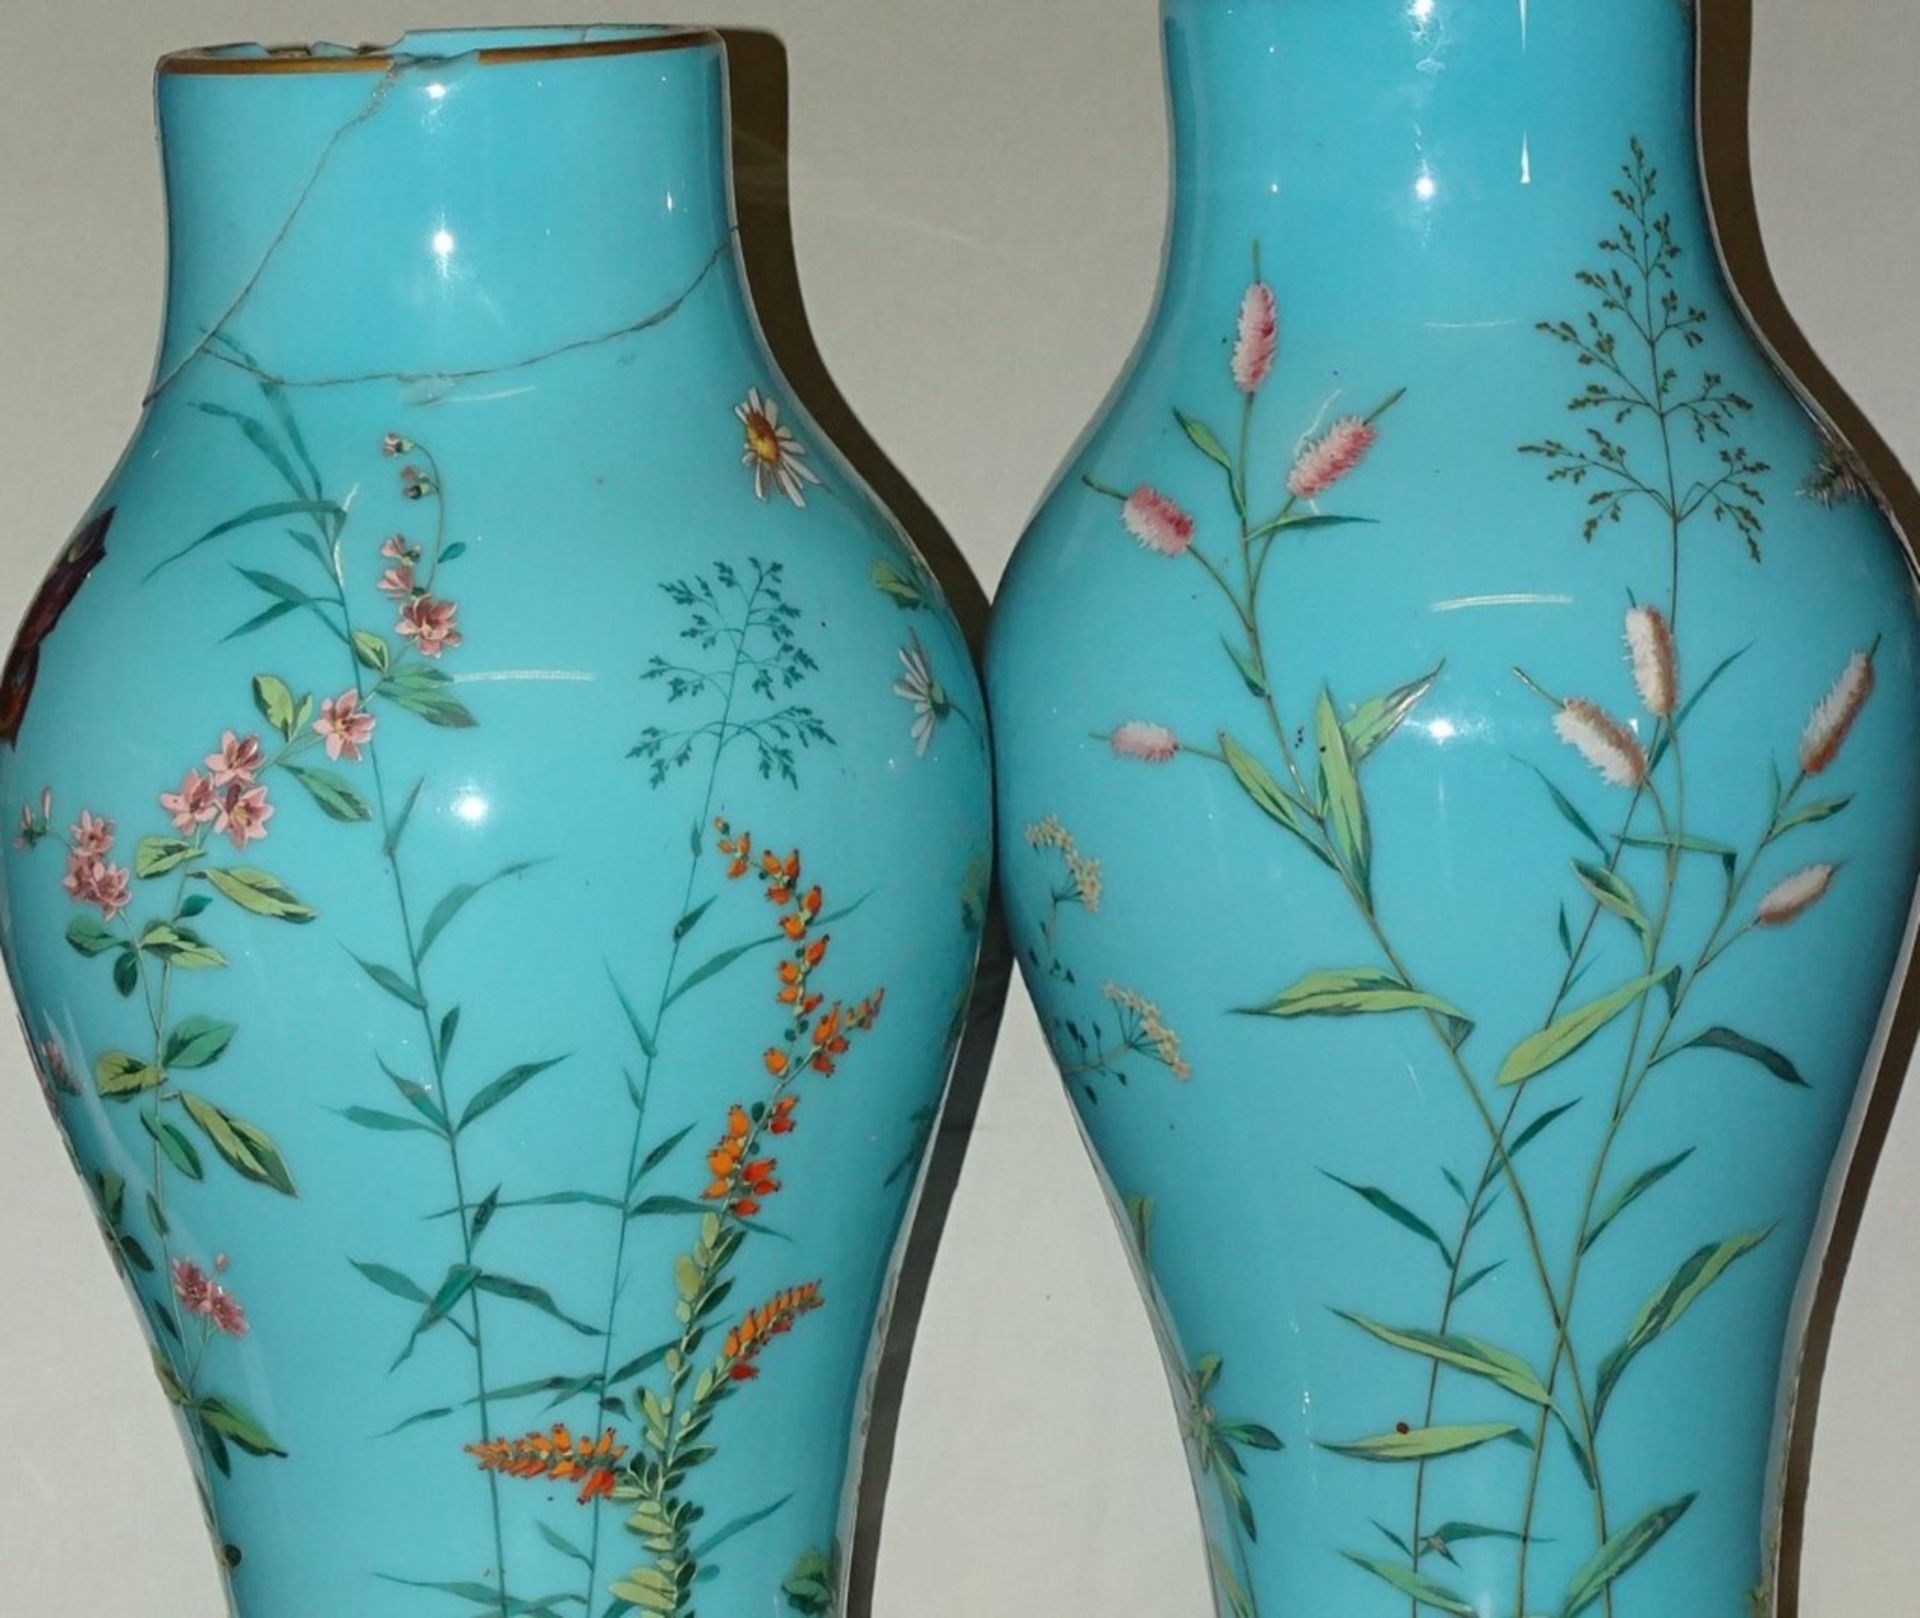 Zwei große Deckelvasen um 1900, floral bemalt mit Insekten, 1x Deckel fehlt, beide Vasen stark - Bild 7 aus 10